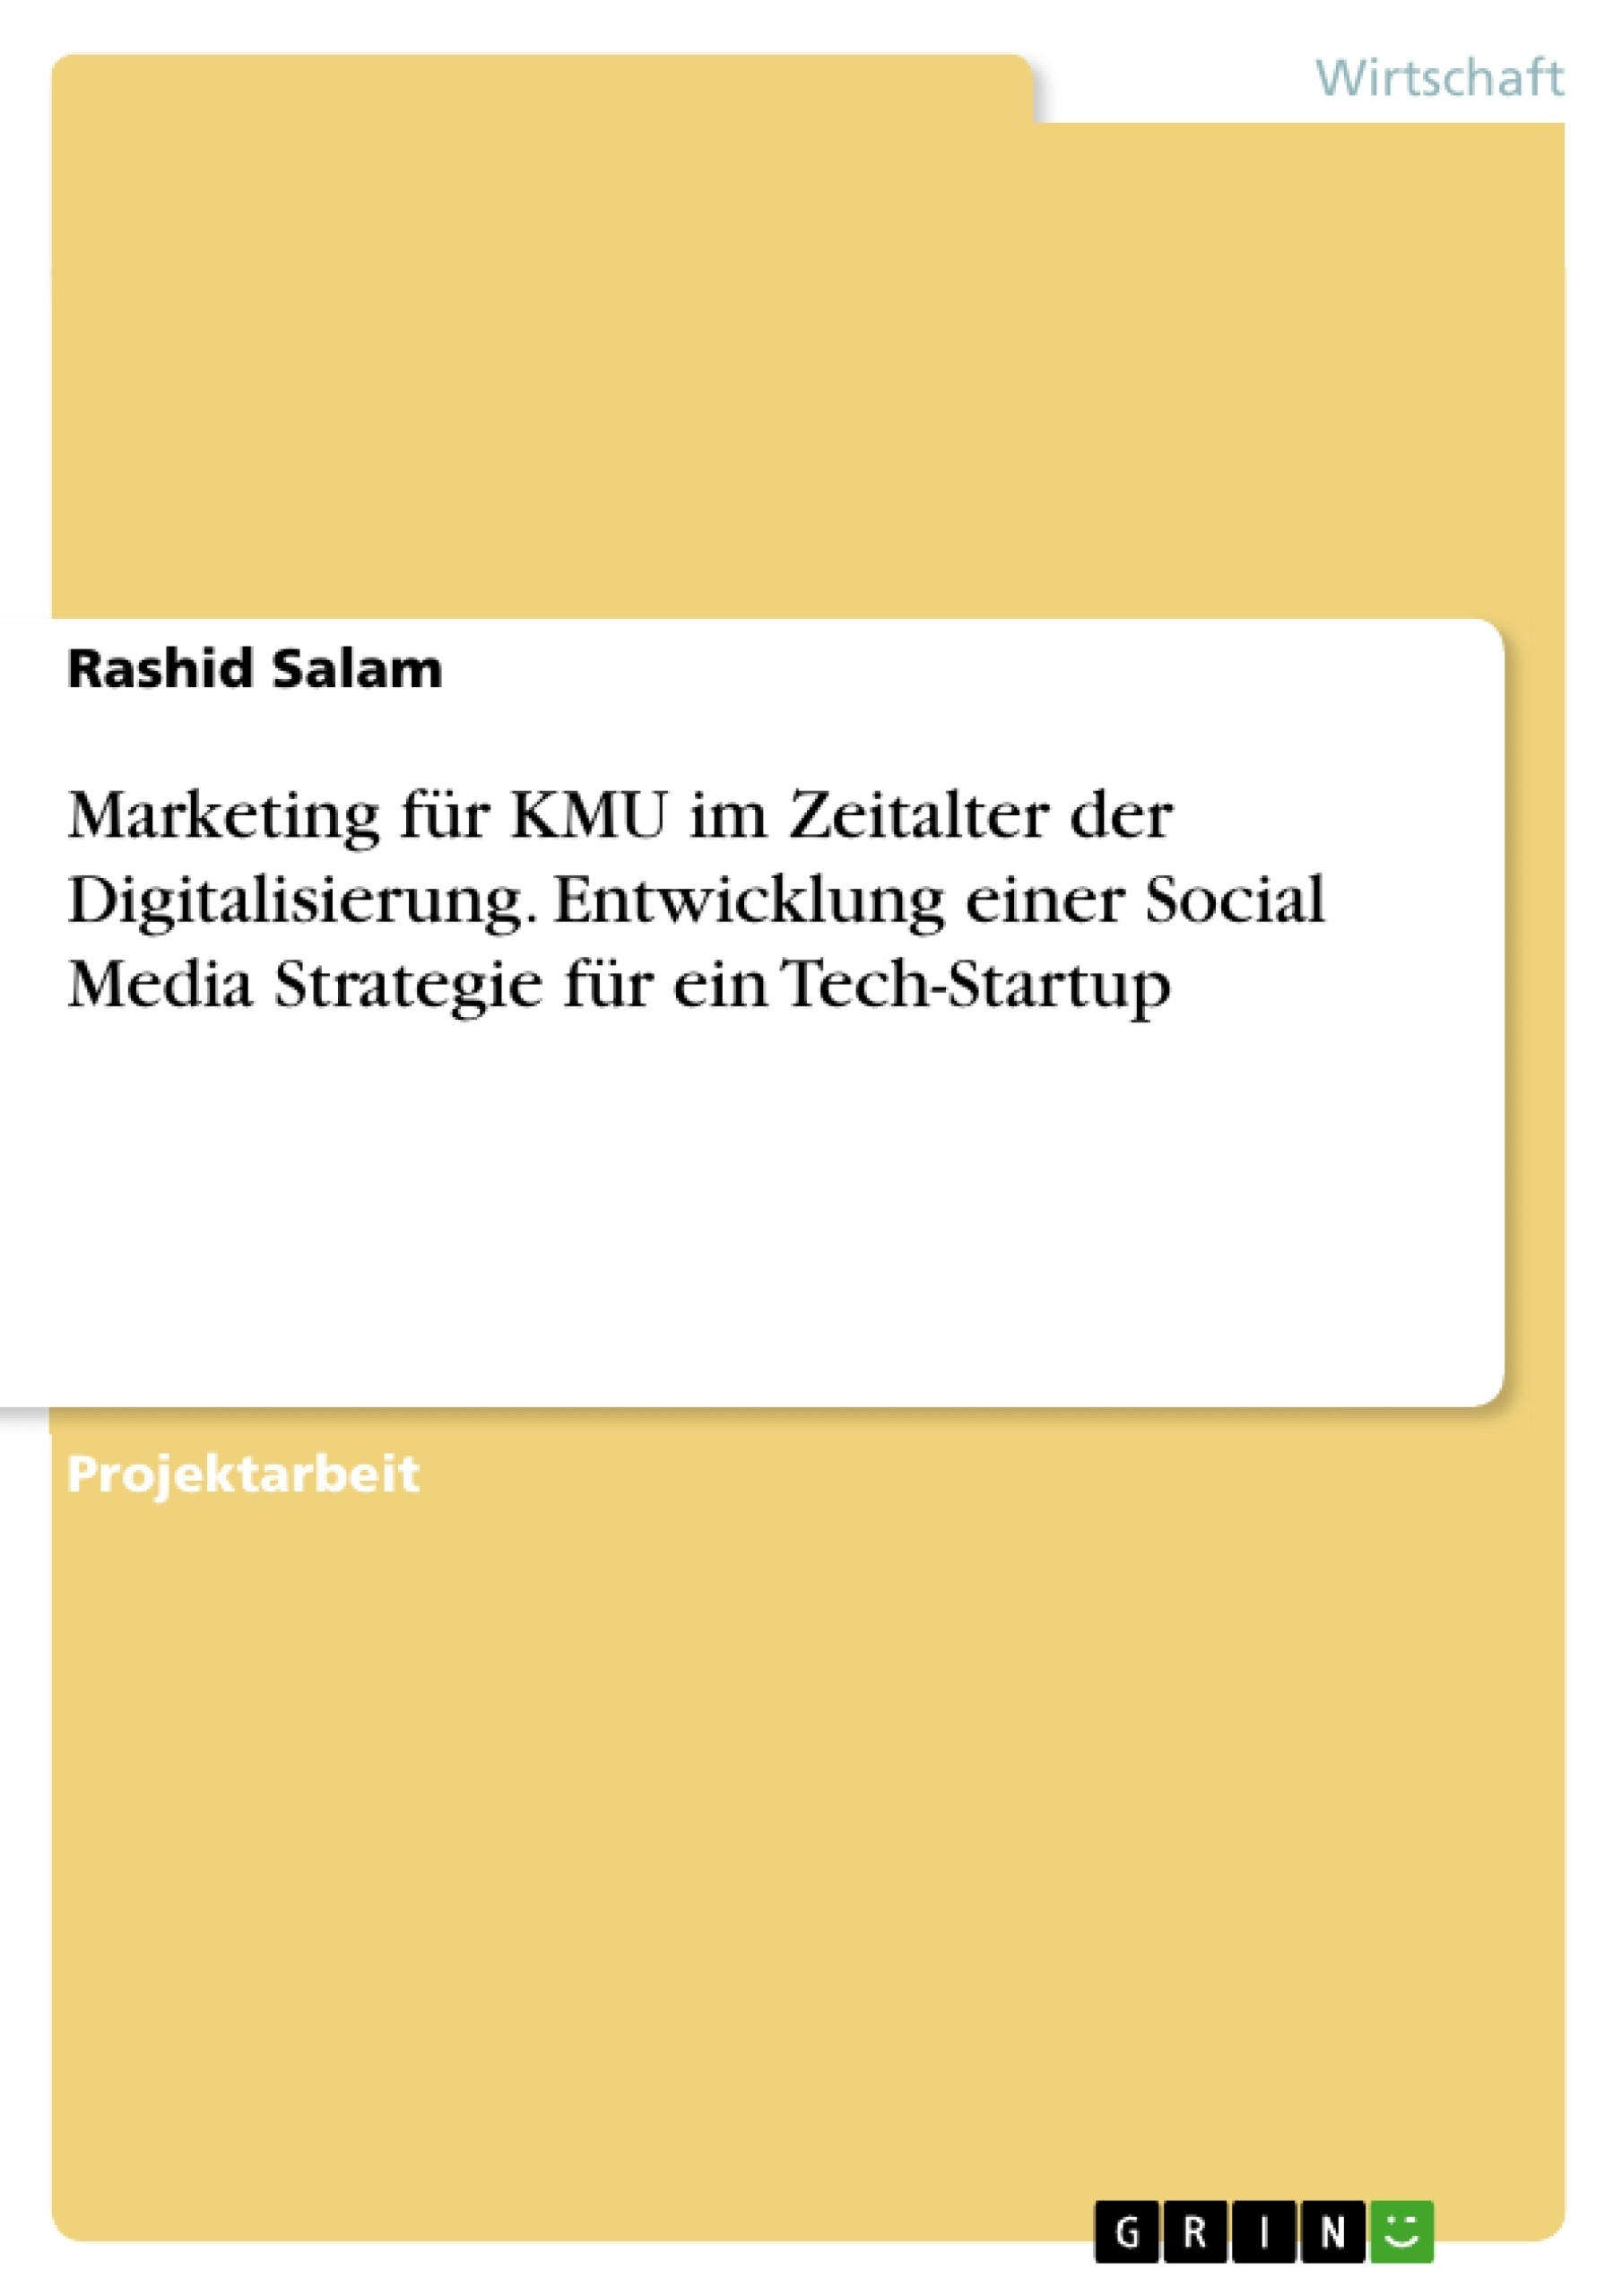 Título: Marketing für KMU im Zeitalter der Digitalisierung. Entwicklung einer Social Media Strategie für ein Tech-Startup